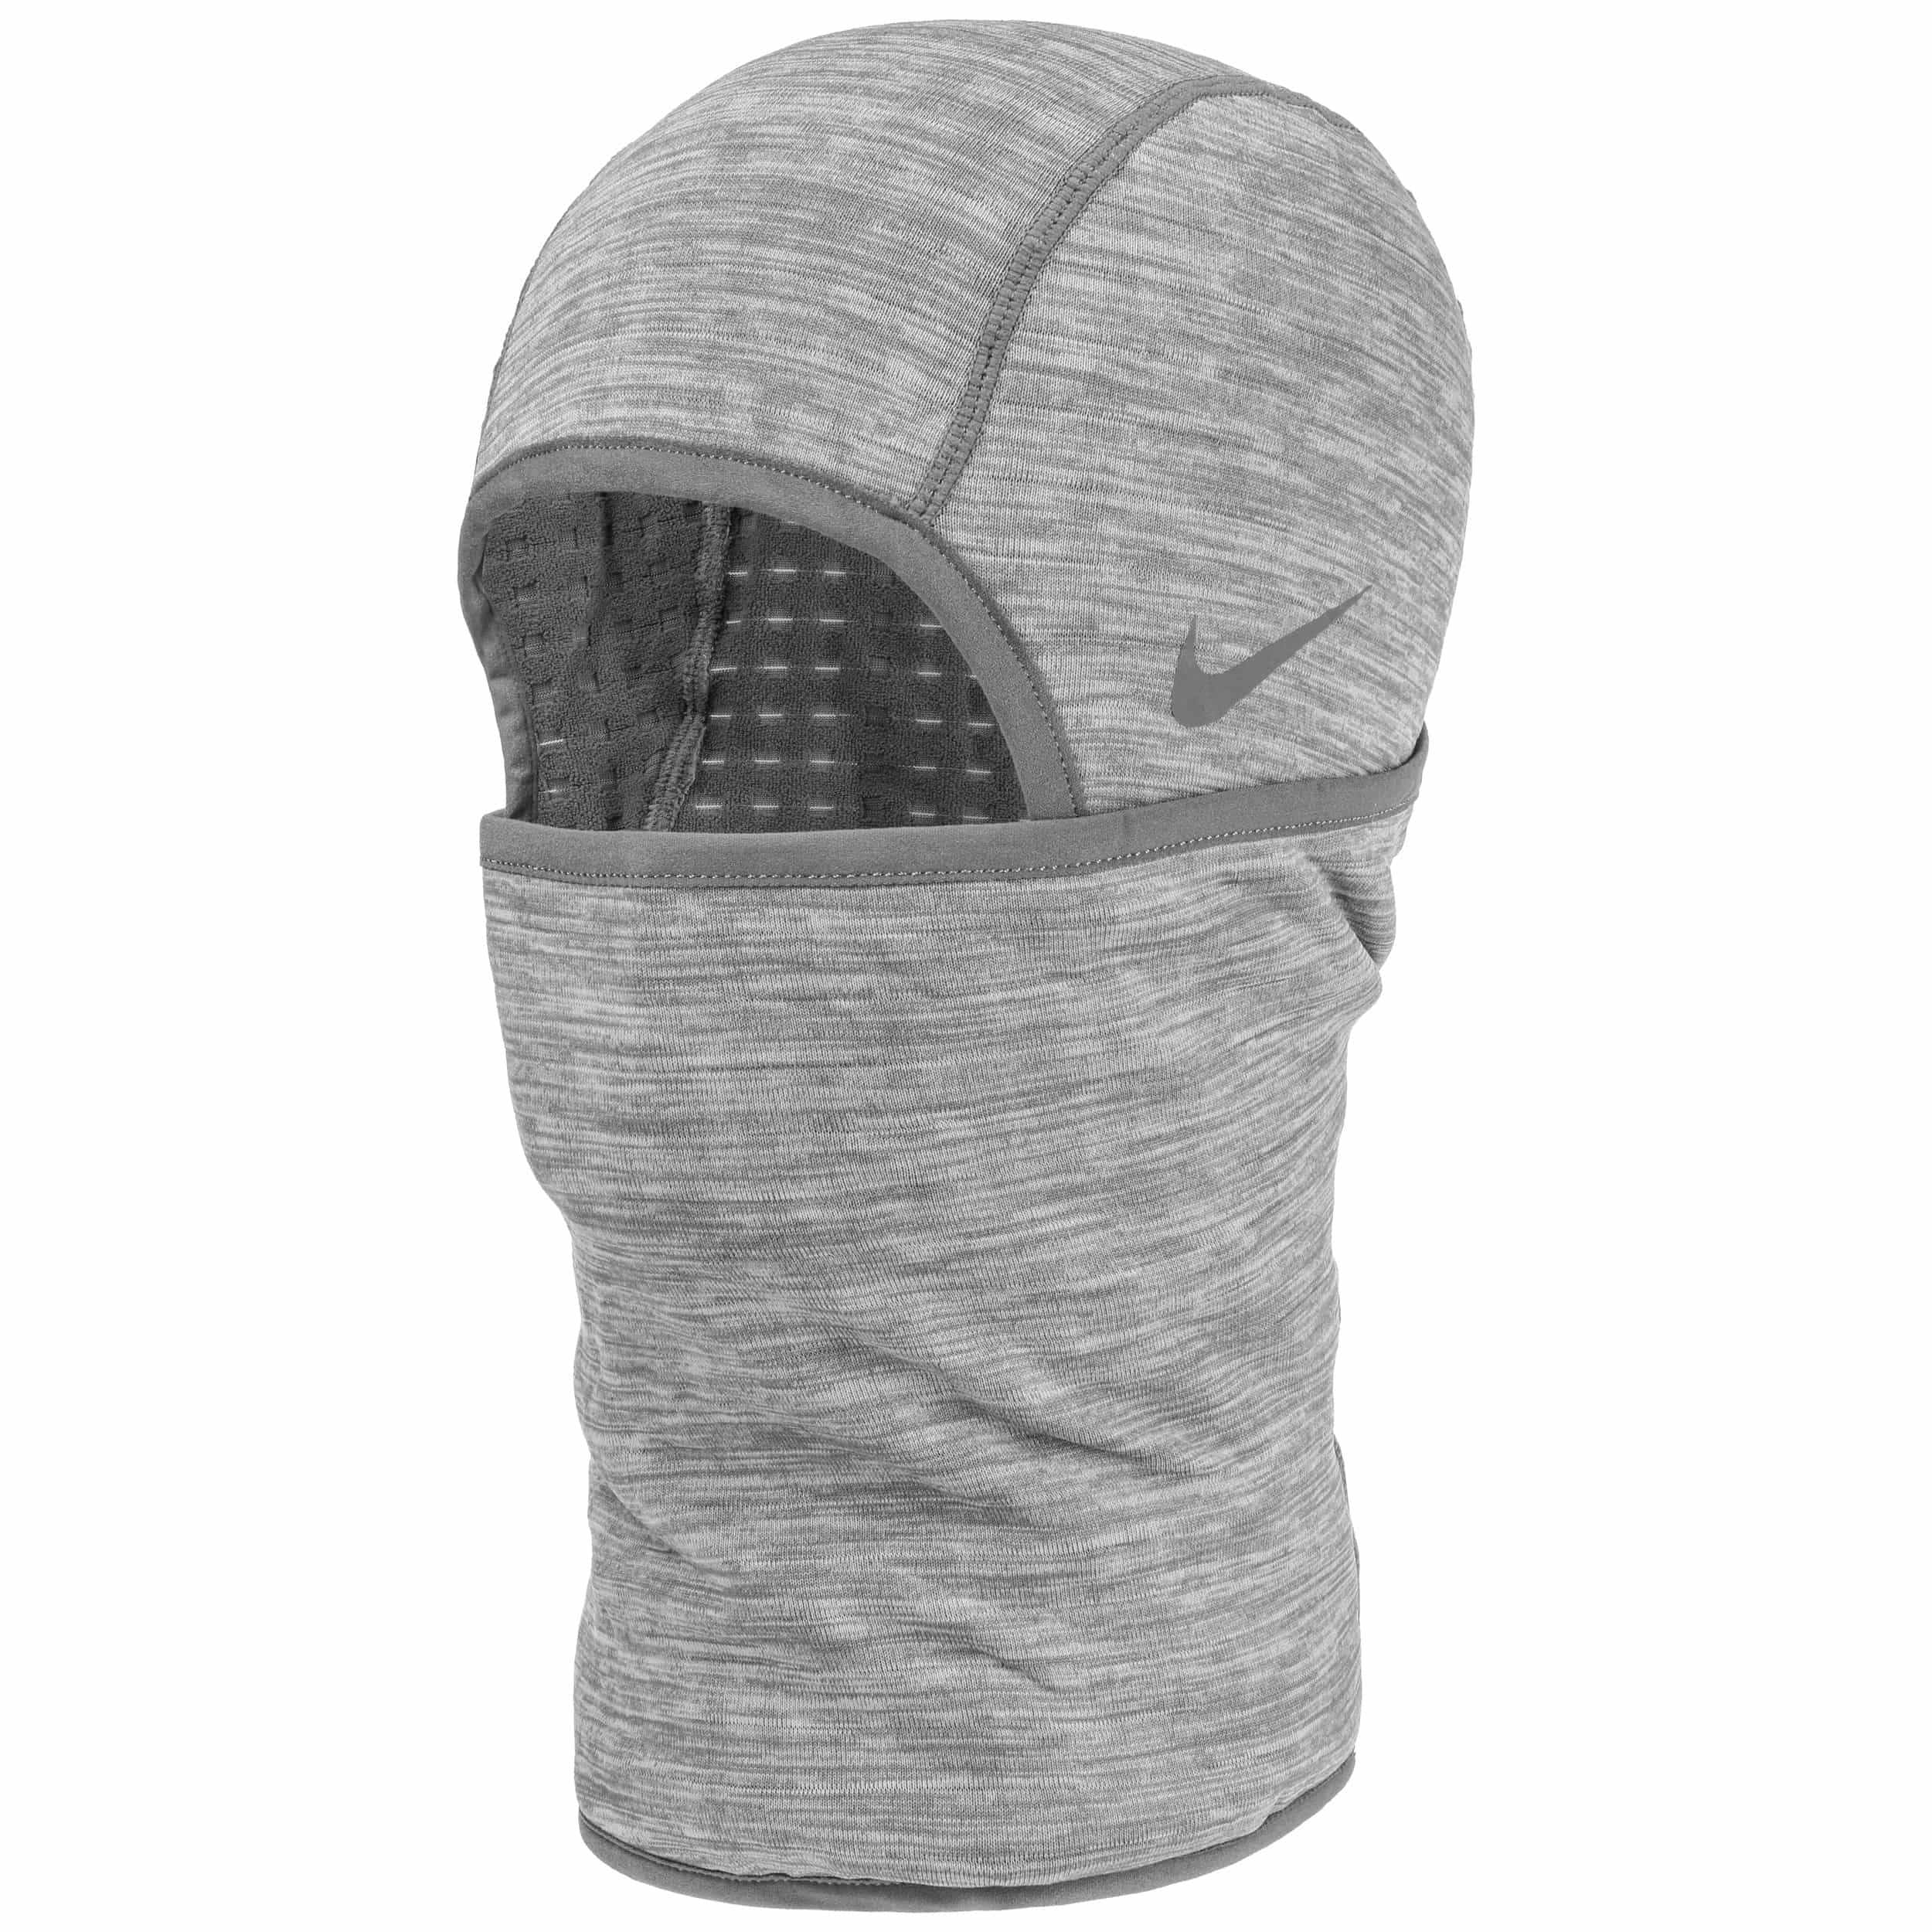 Nike Cagoule Therma Sphere Hood 2.0 Noir